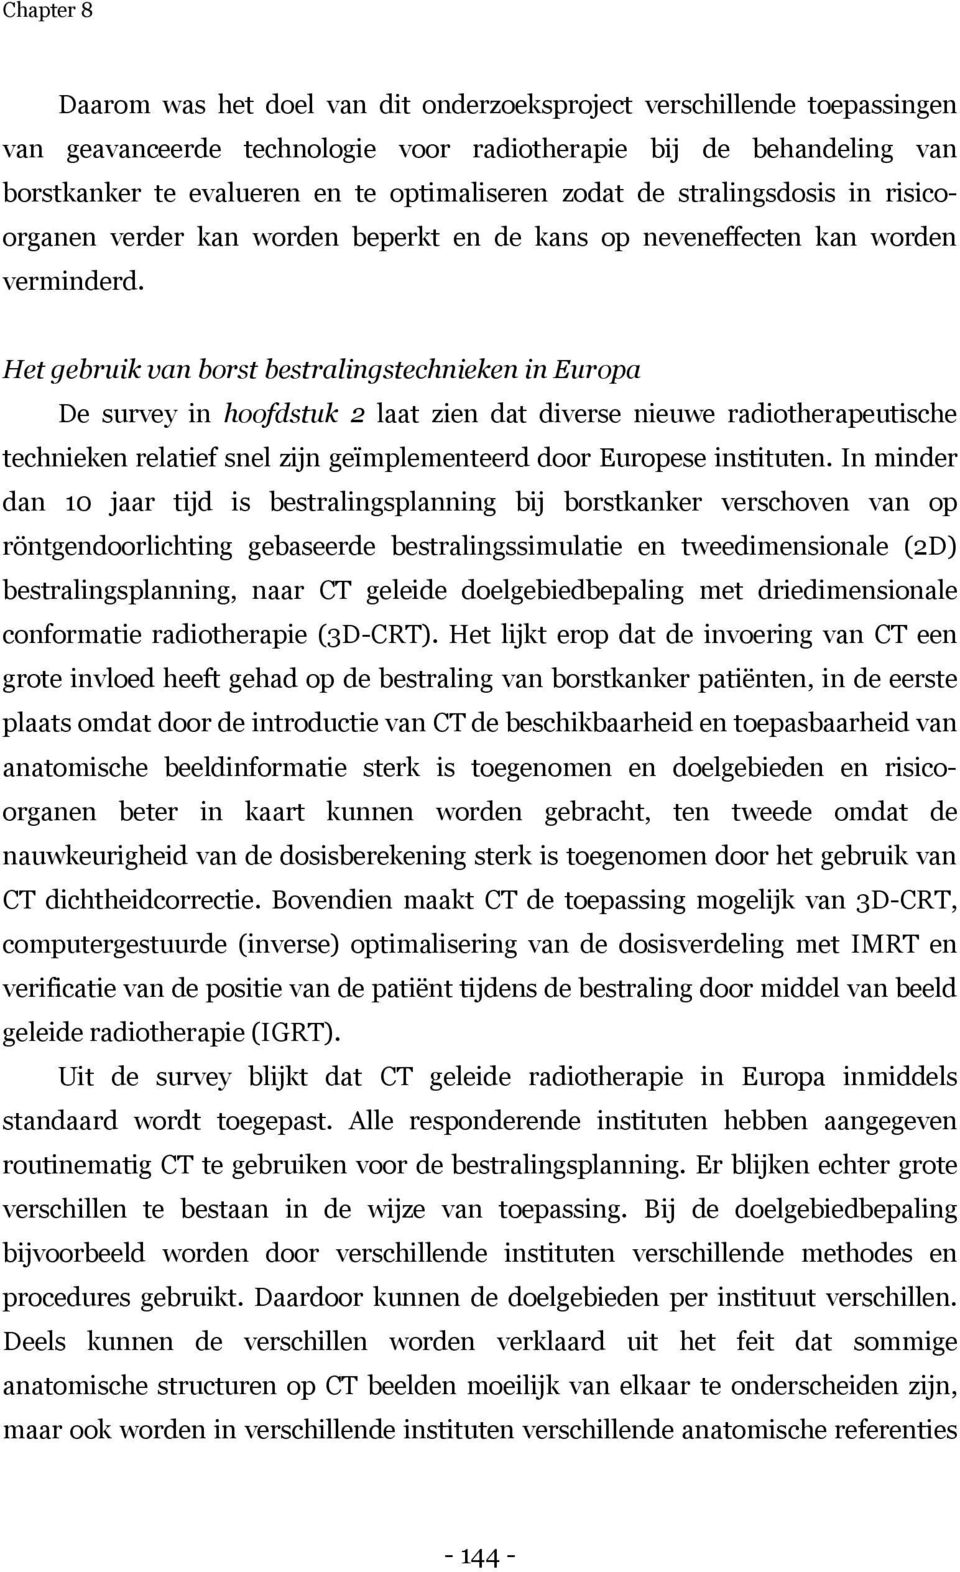 Het gebruik van borst bestralingstechnieken in Europa De survey in hoofdstuk 2 laat zien dat diverse nieuwe radiotherapeutische technieken relatief snel zijn geïmplementeerd door Europese instituten.